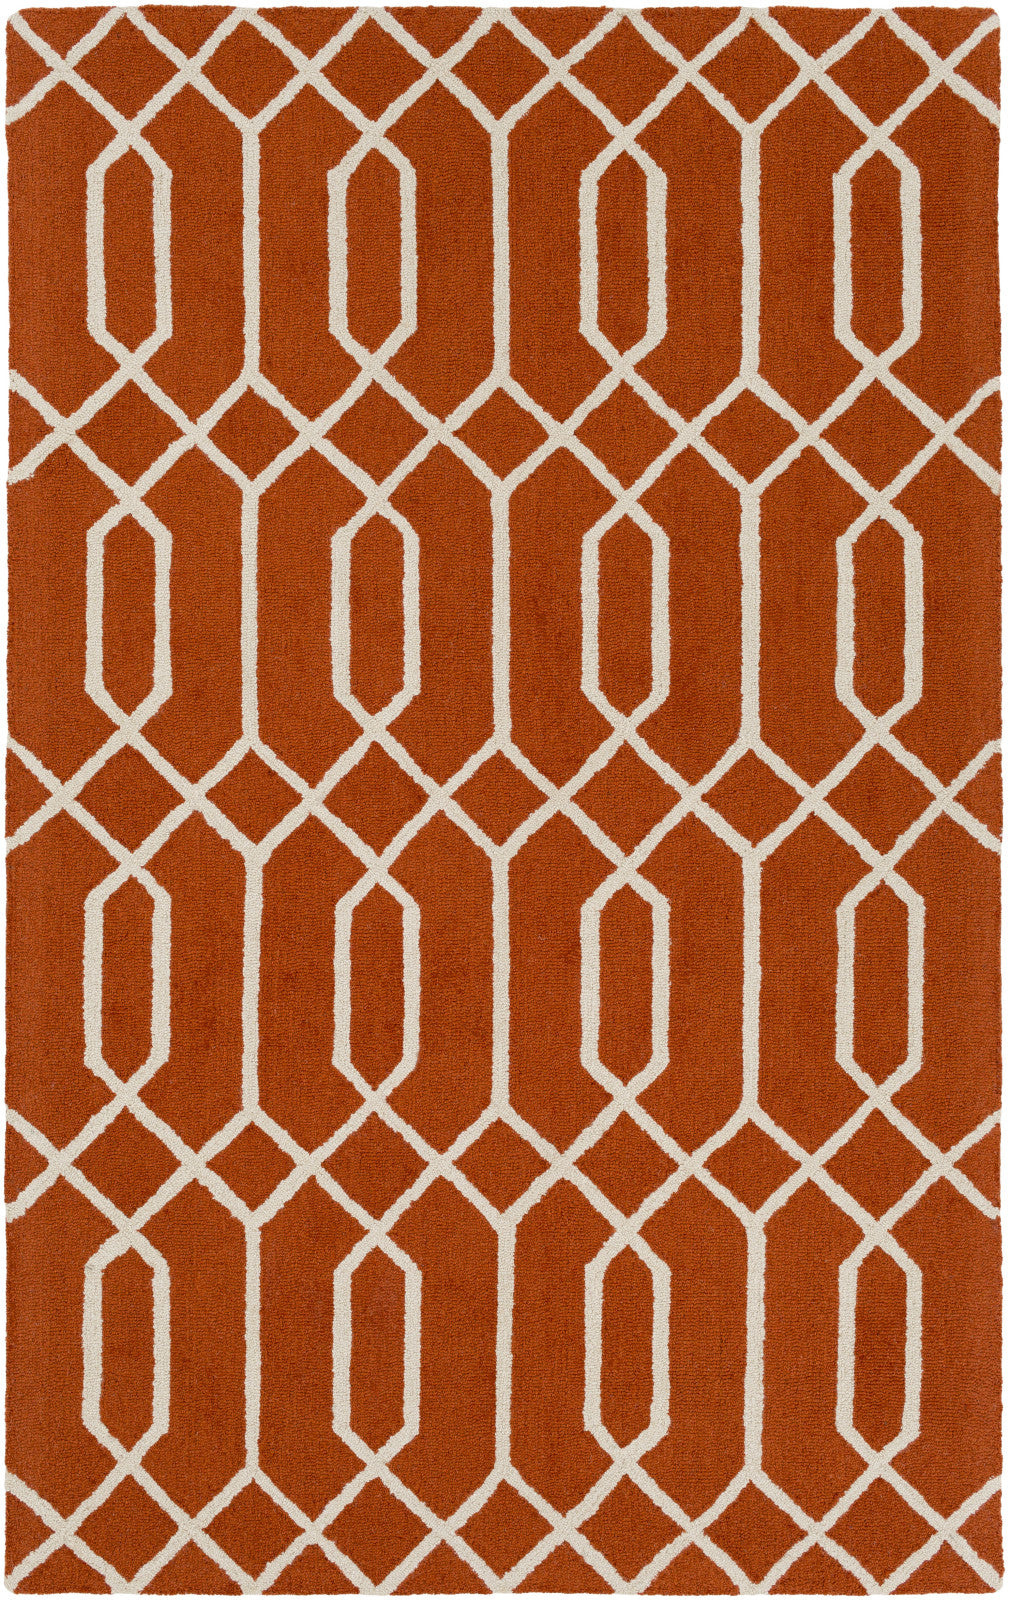 Artistic Weavers Impression Ashley Bright Orange/Ivory Area Rug main image